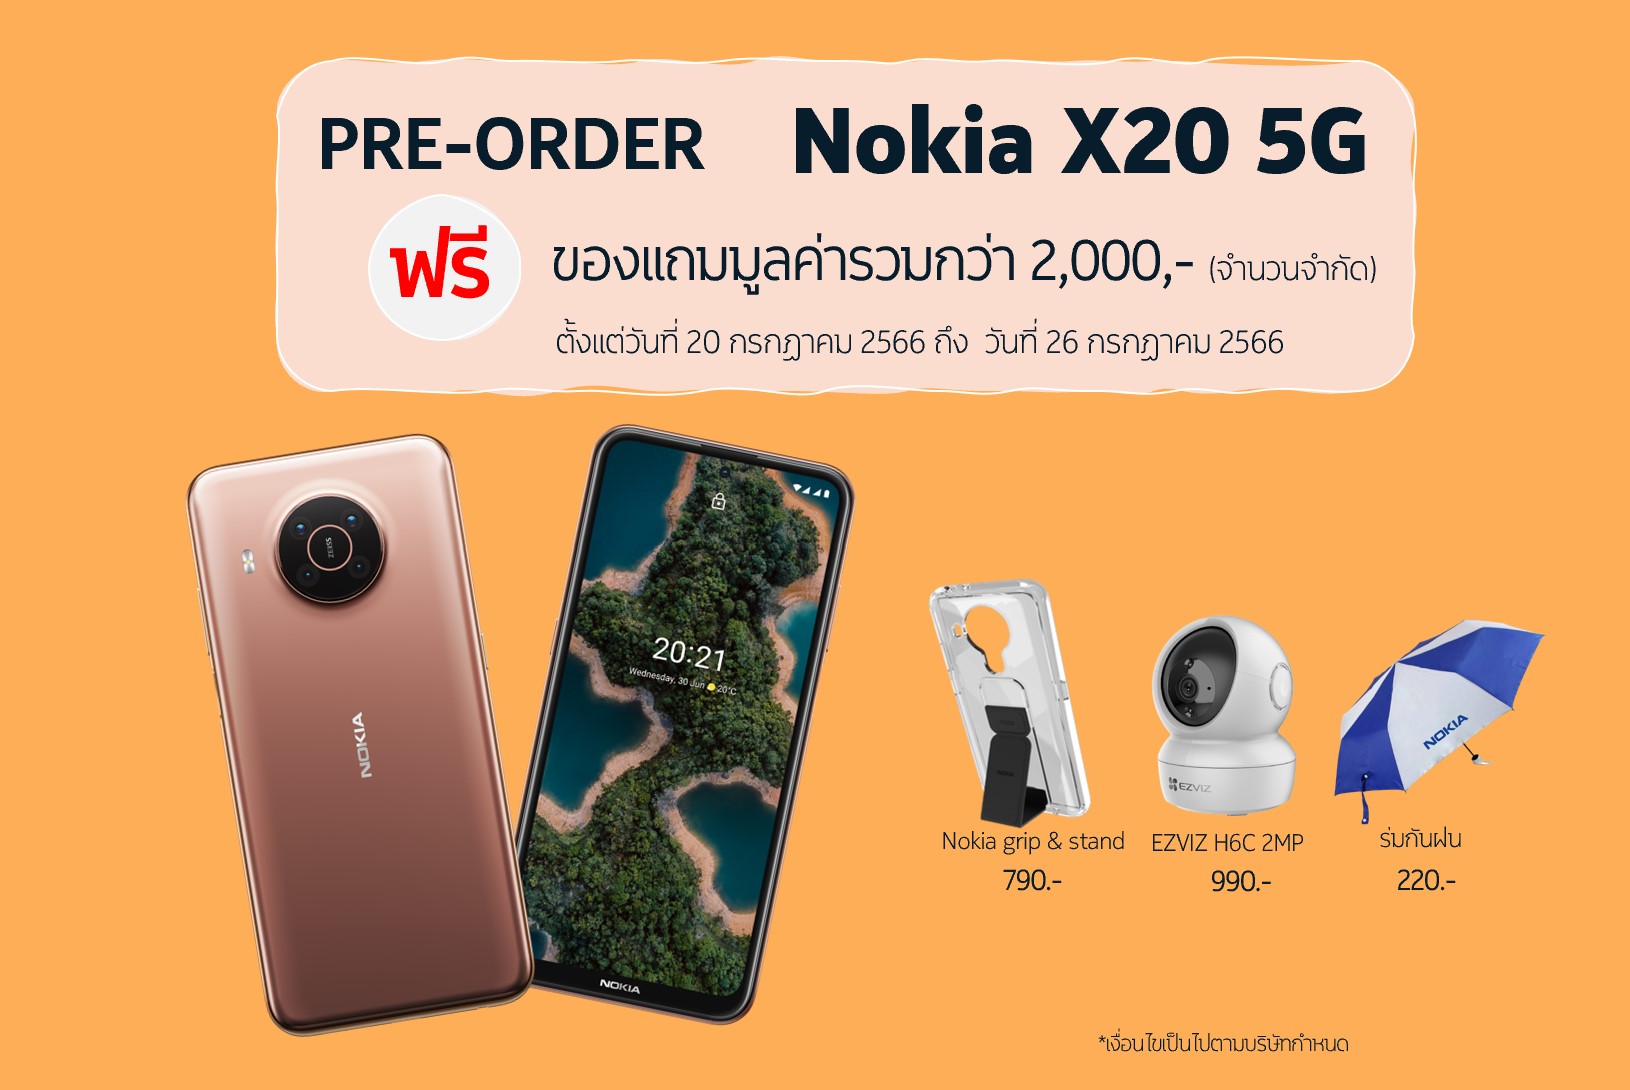 พรีออเดอร์ Nokia X20 5G เริ่ม 20 กรกฎาคมนี้ ราคาเพียง 6,990 บาท จัดเต็มของแถมฟรีมูลค่ากว่า 2,000 บาท